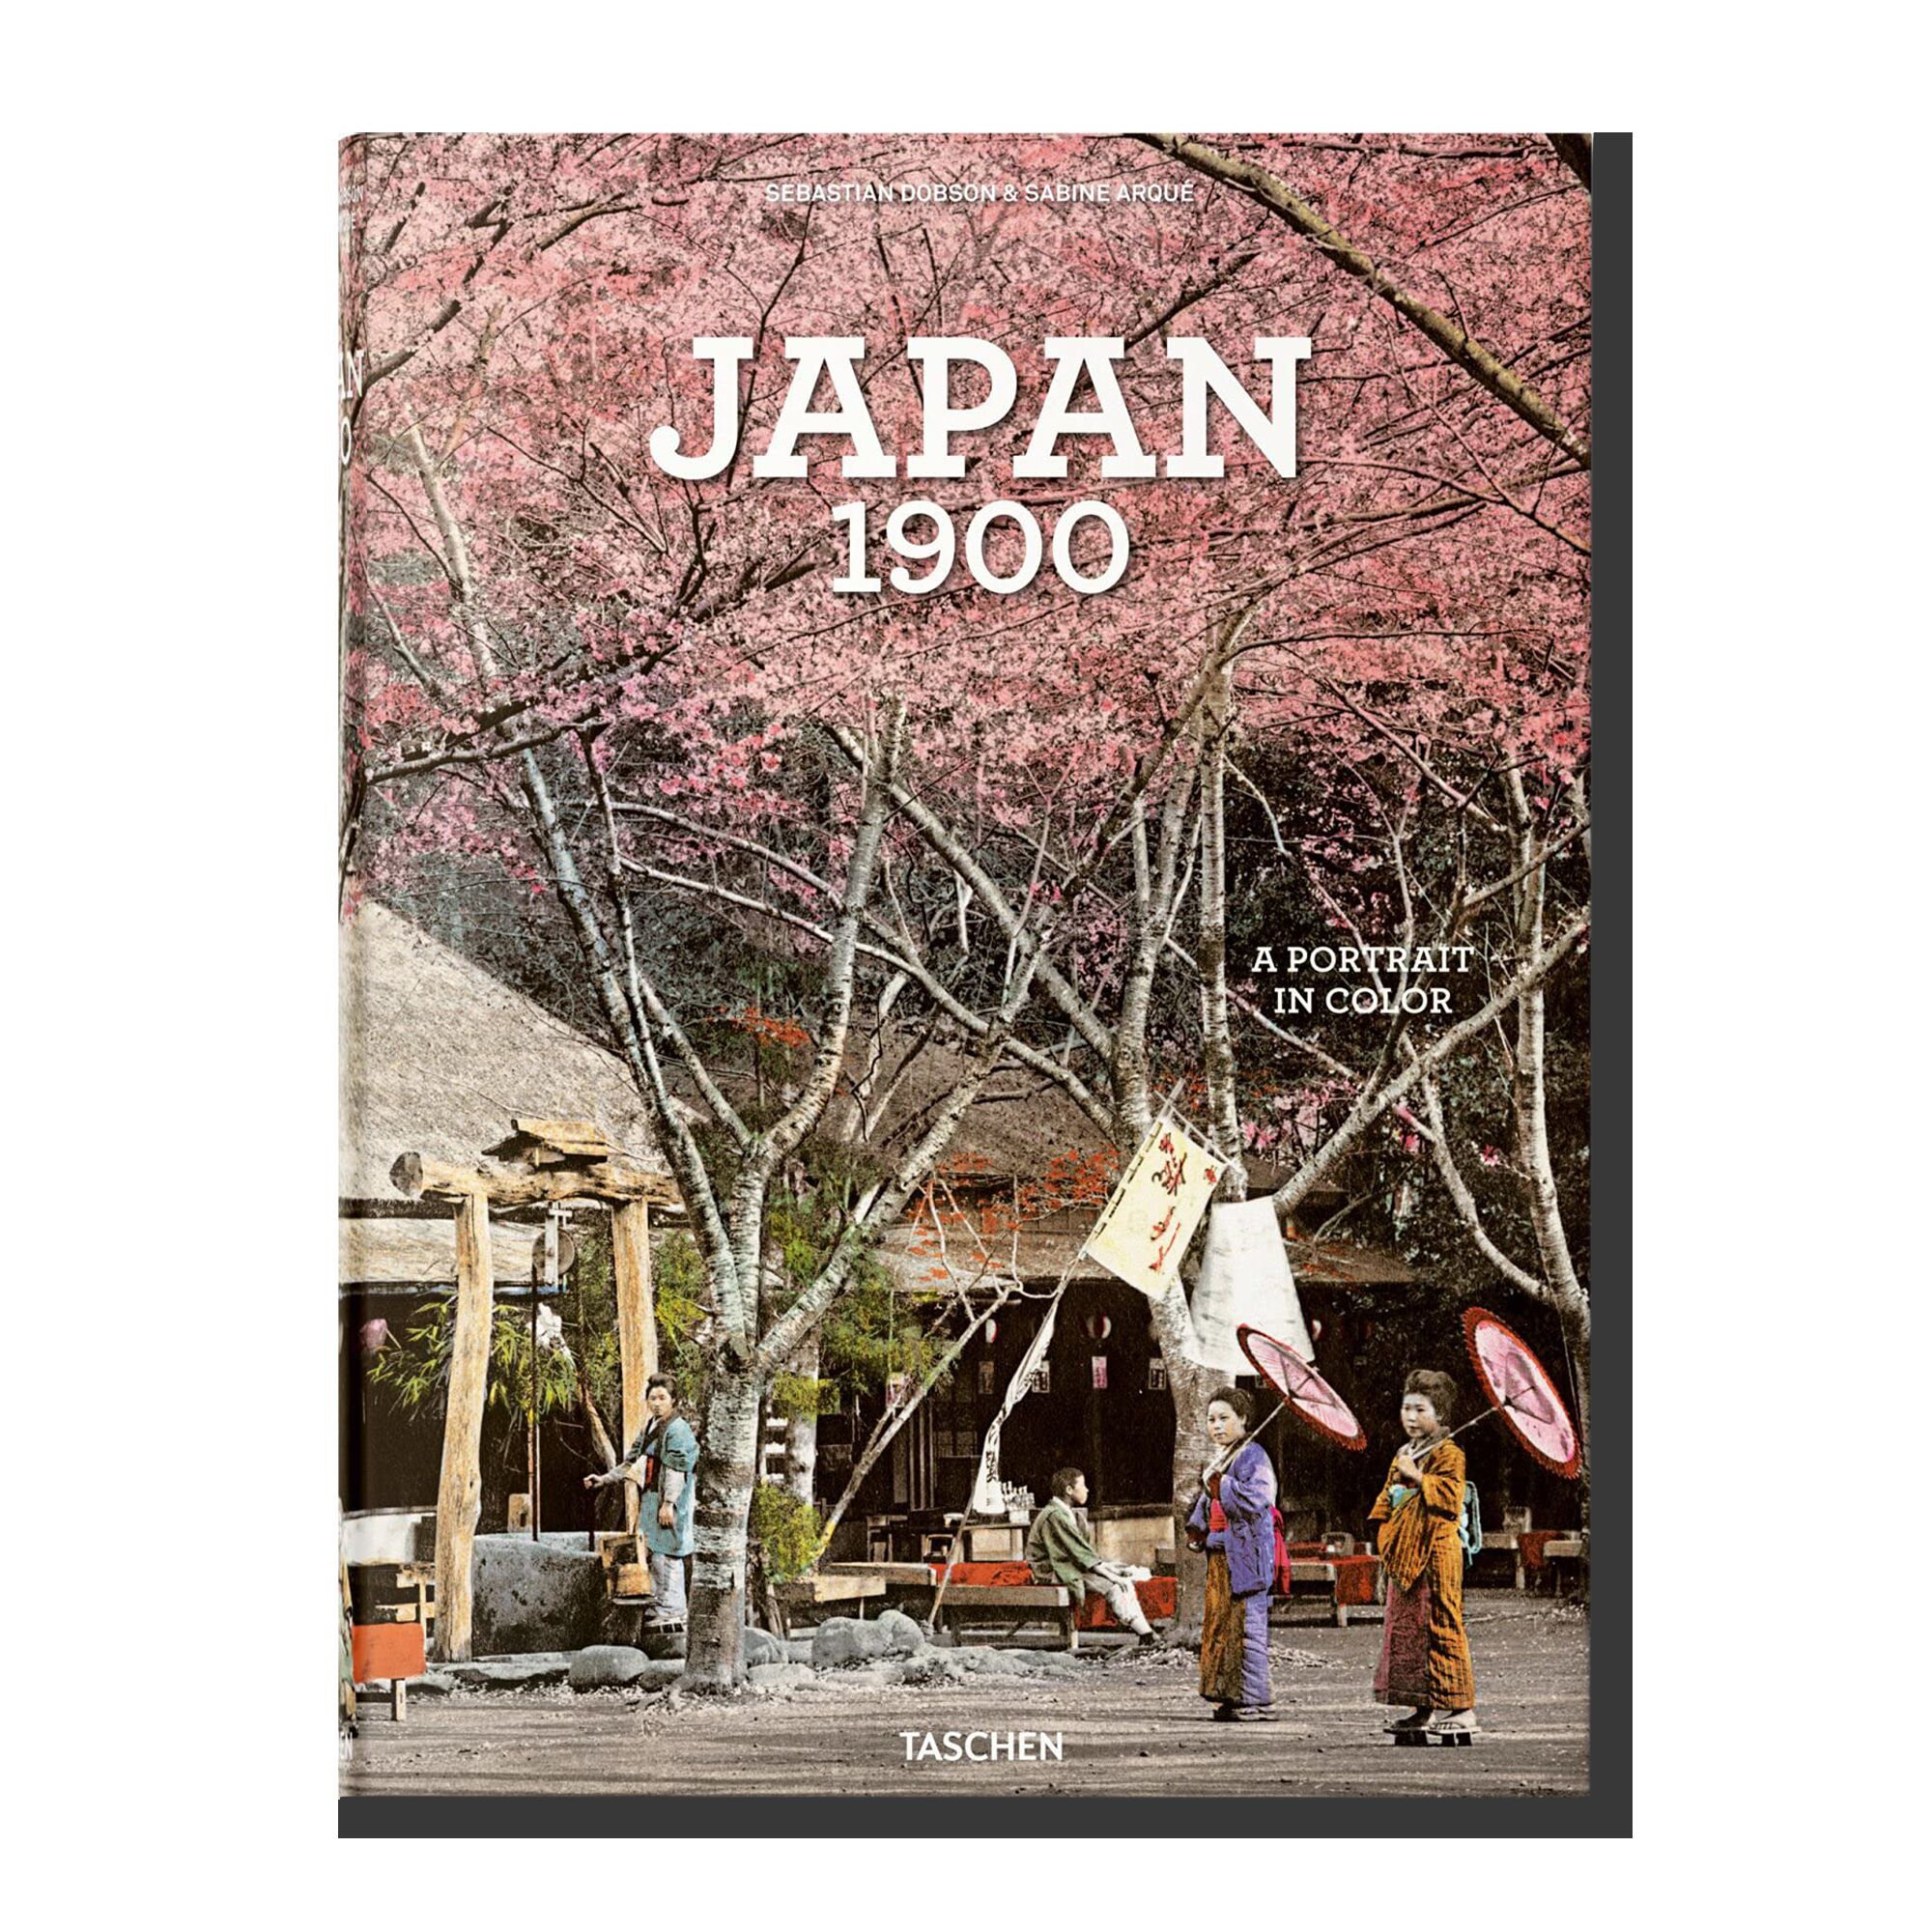 Japan 1900: A Portrait in Colour